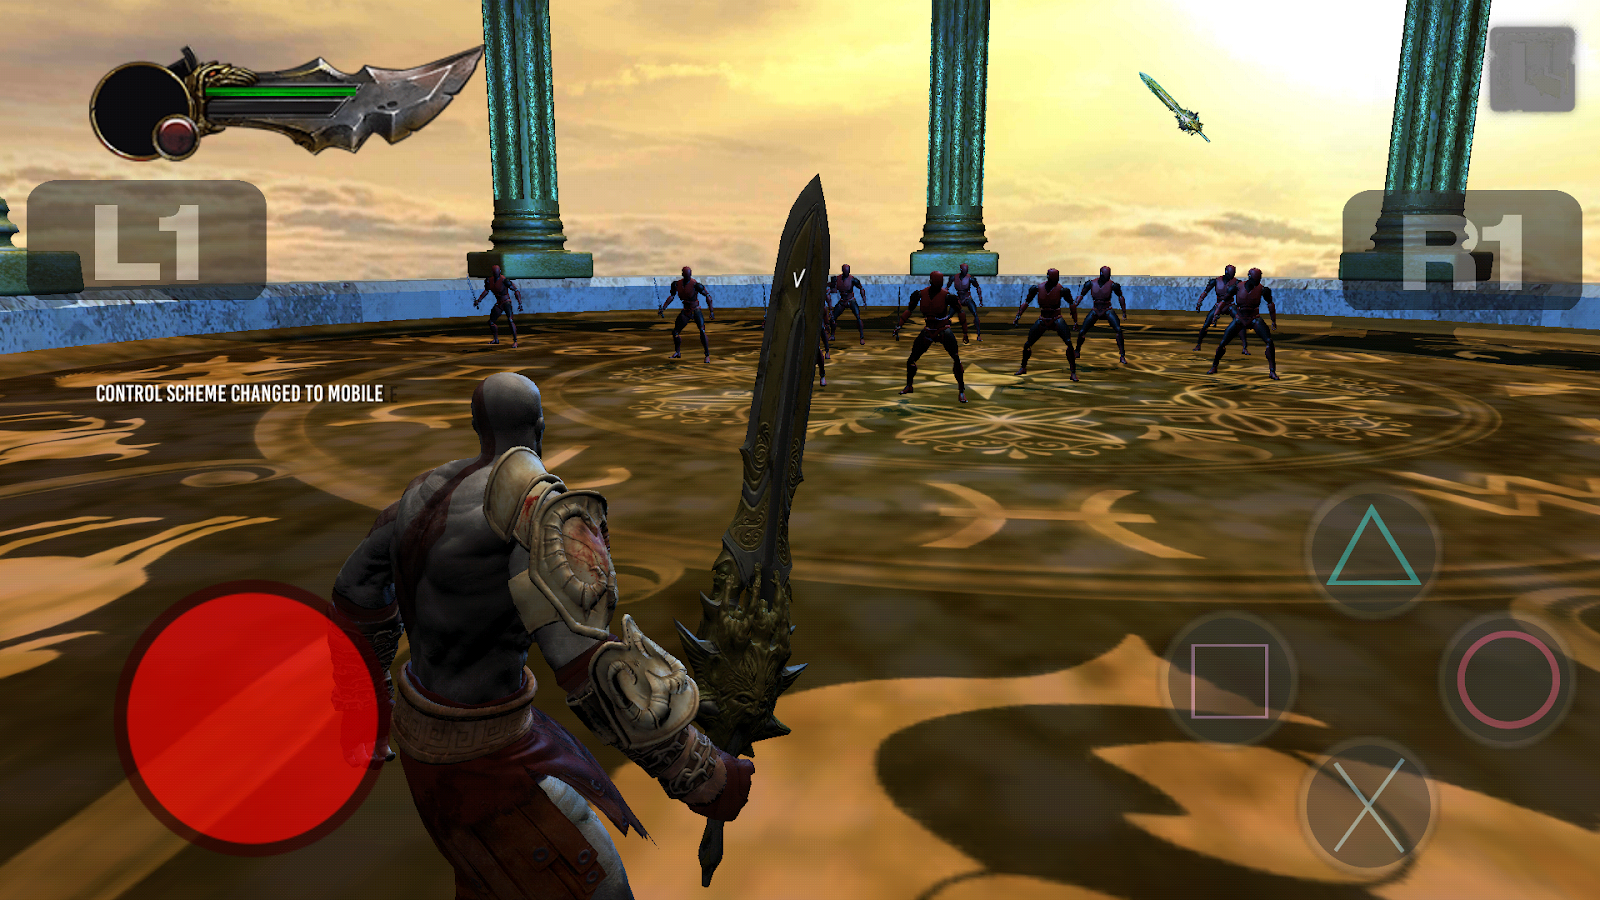 God of War - Como jogar jogos de PSP no celular Android - Android4all